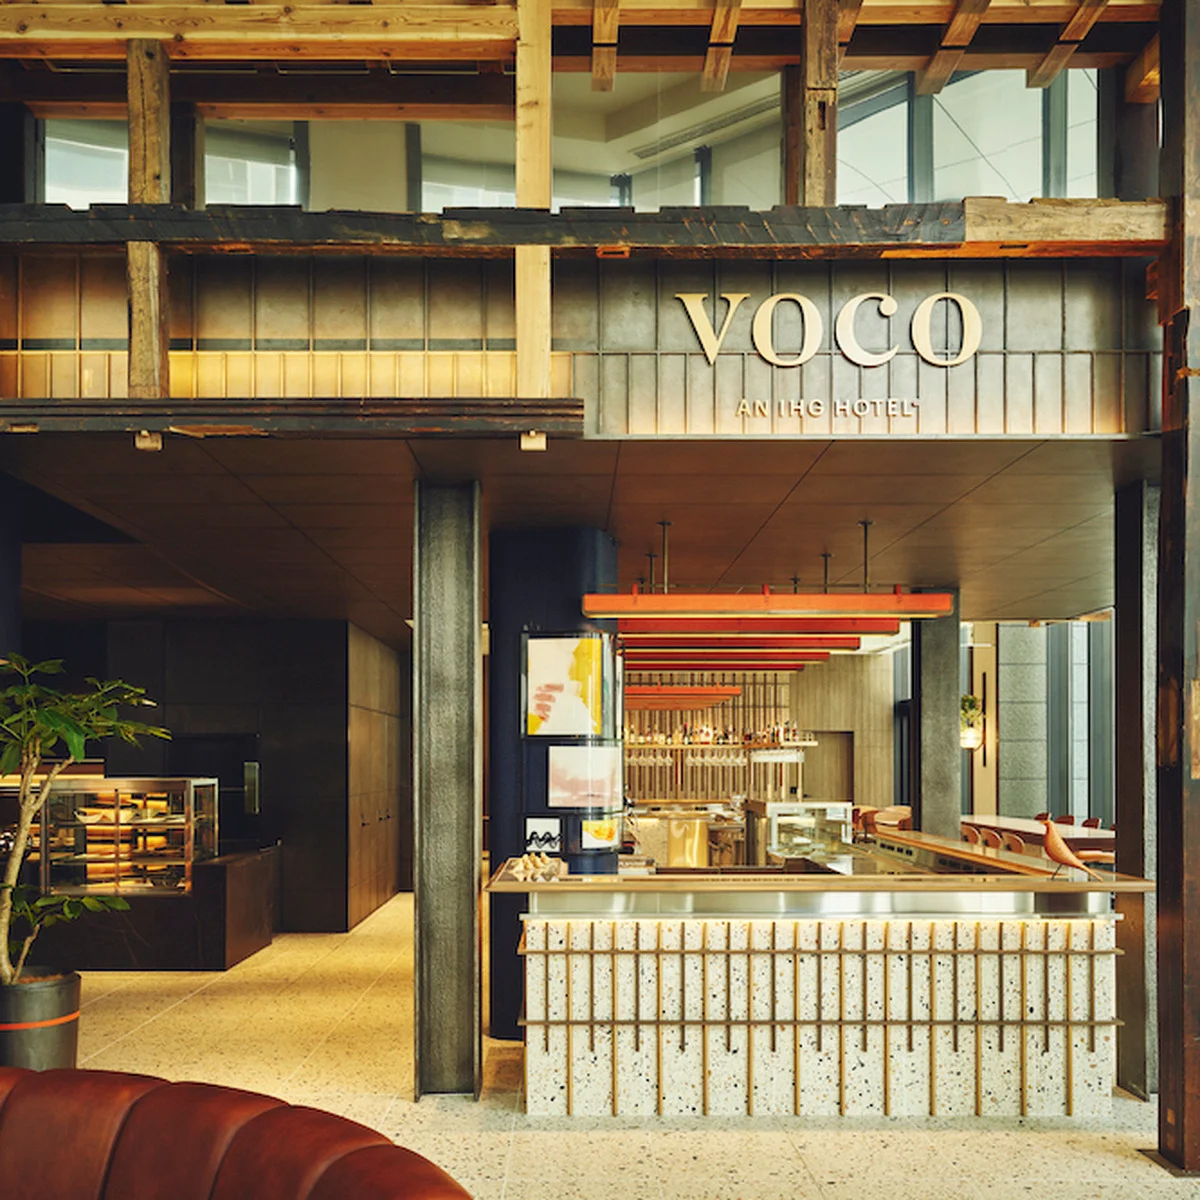 大阪ステイに新たな選択肢。プレミアムホテルブランド「voco大阪セントラル」で特別なホテル体験を